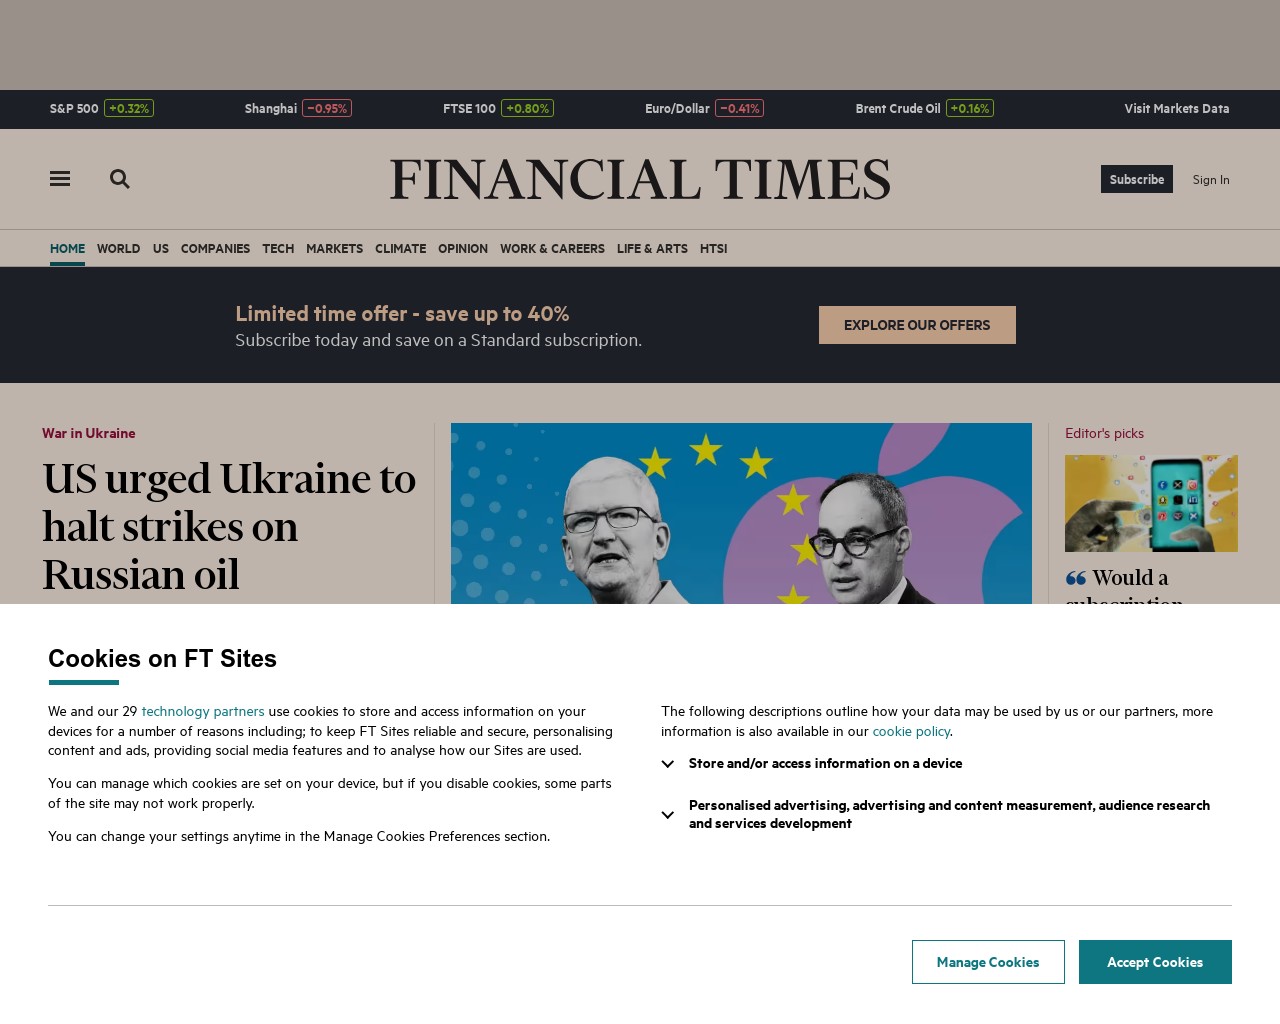 Изображение скриншота сайта - Один з найкращих сайтів, де можна знайти інформацію про фінанси, аудит, бізнес та економіку, є Financial Times